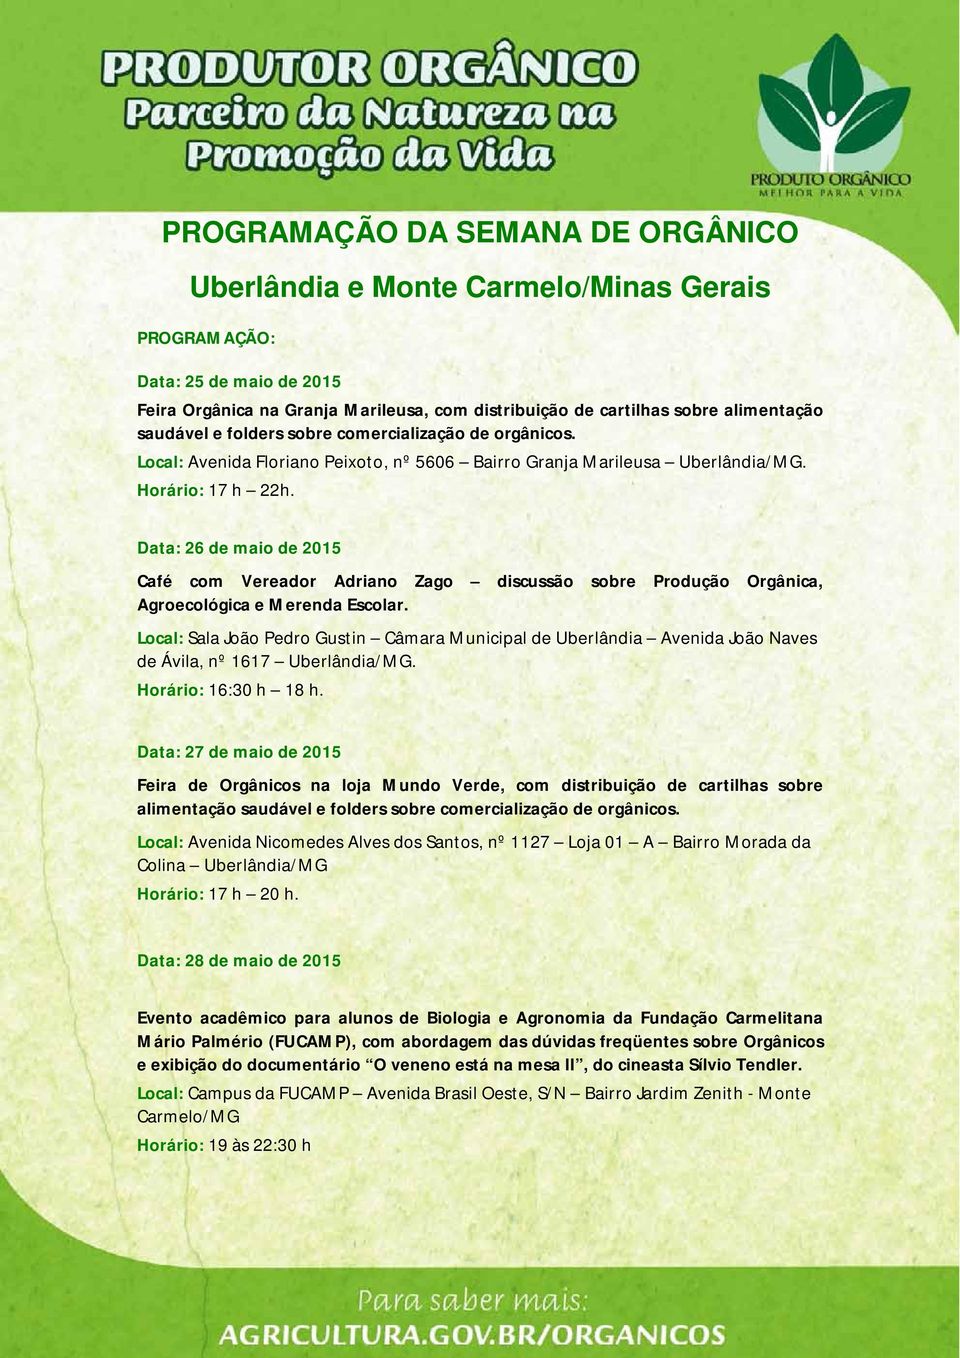 Data: 26 de maio de 2015 Café com Vereador Adriano Zago discussão sobre Produção Orgânica, Agroecológica e Merenda Escolar.